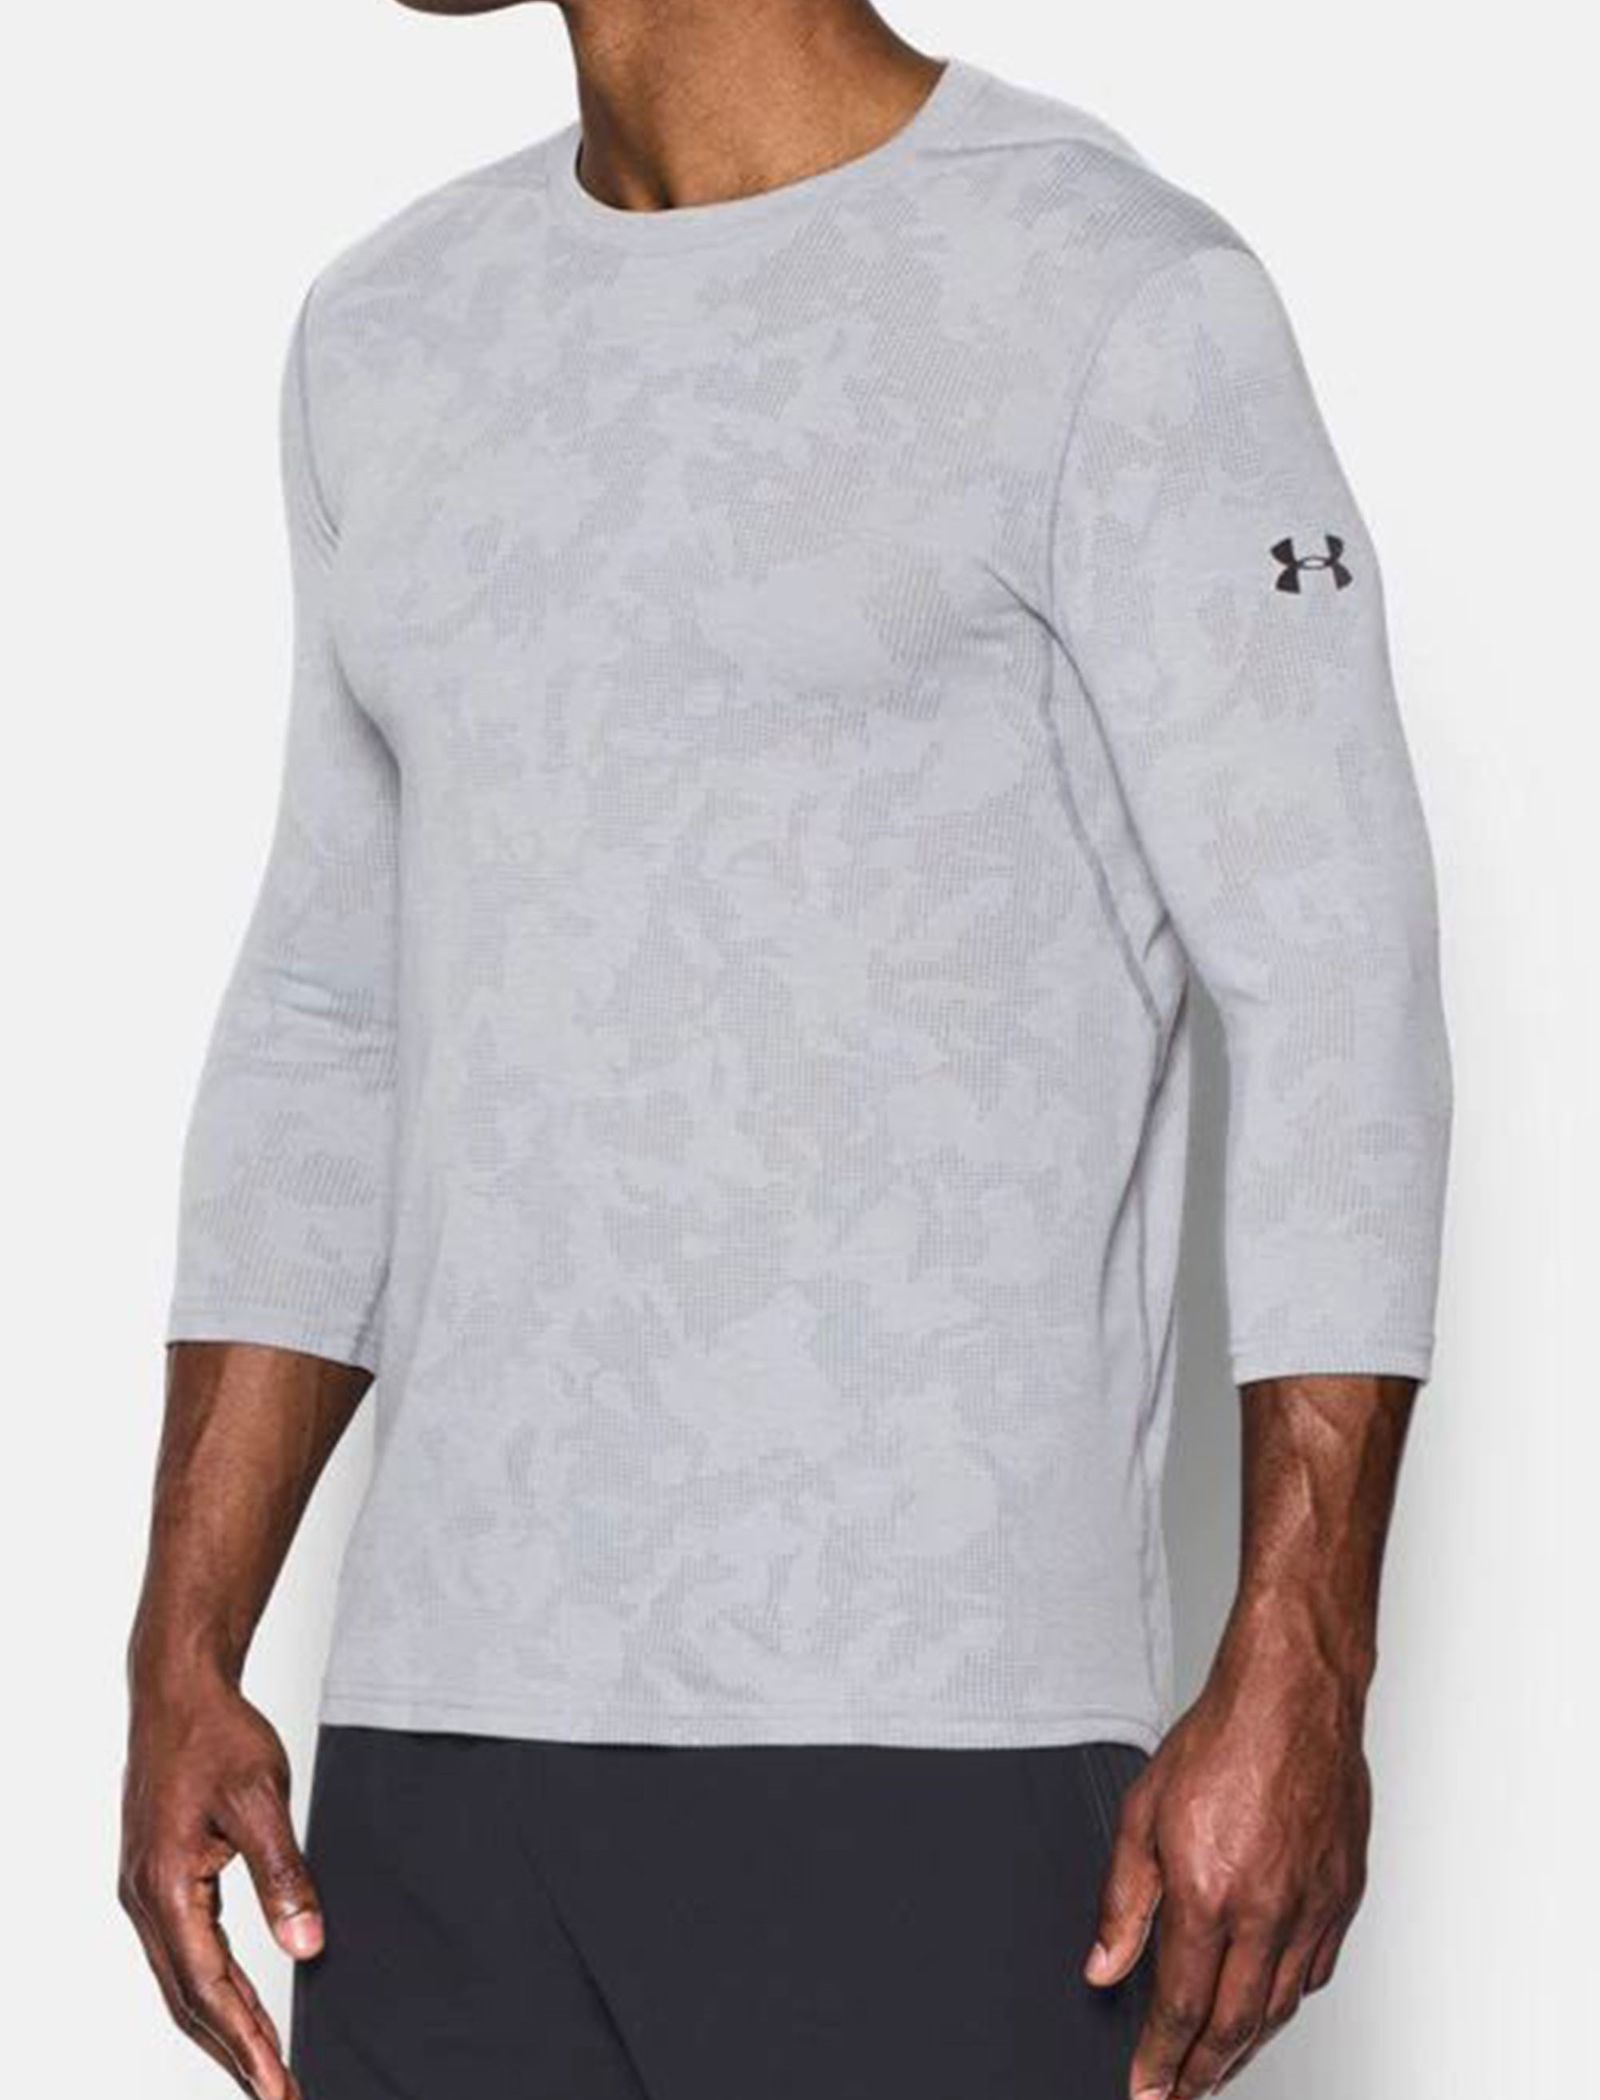 تی شرت ورزشی آستین کوتاه مردانه UA Threadborne - آندر آرمور - طوسي - 4